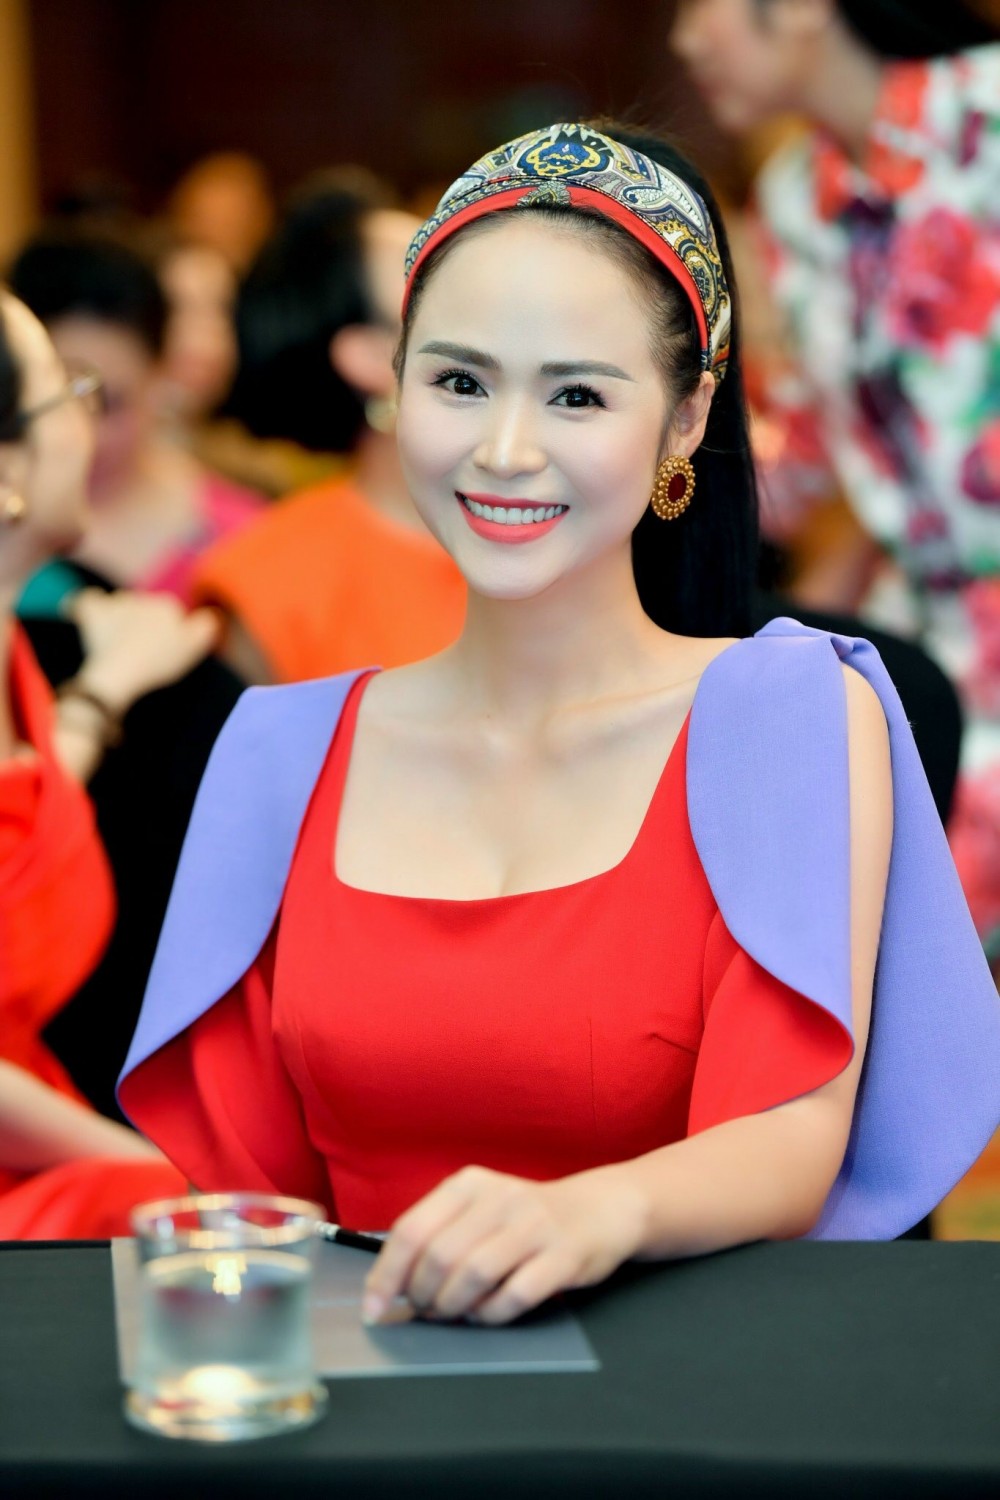 Nữ hoàng Hoa hồng Bùi Thành Hương: Hành trình kiến tạo bởi chữ ‘Duyên’